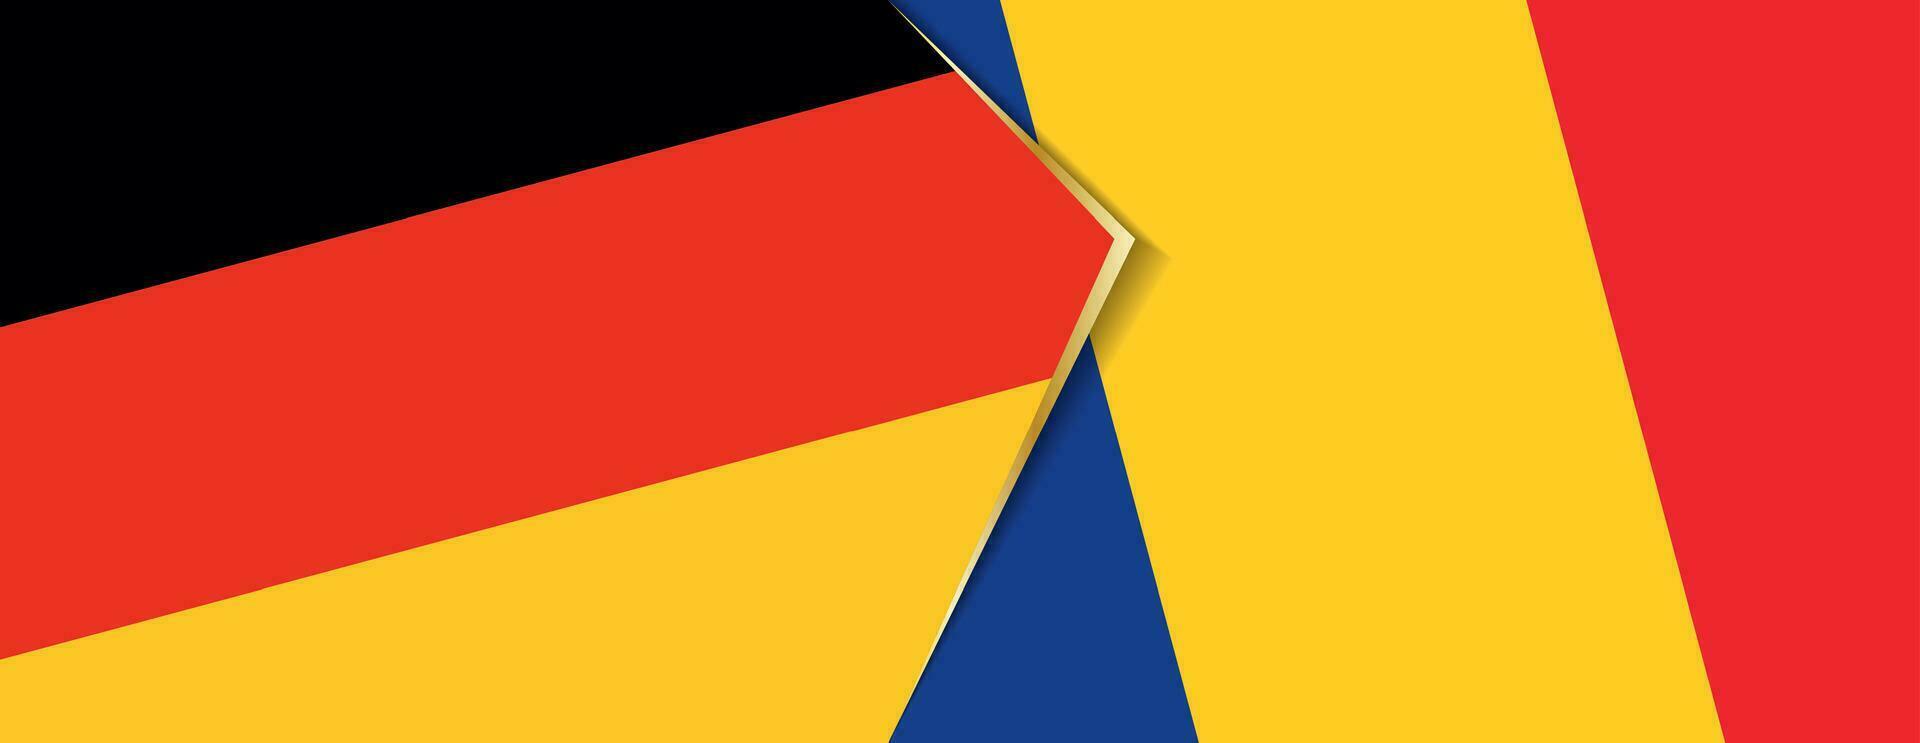 Allemagne et Roumanie drapeaux, deux vecteur drapeaux